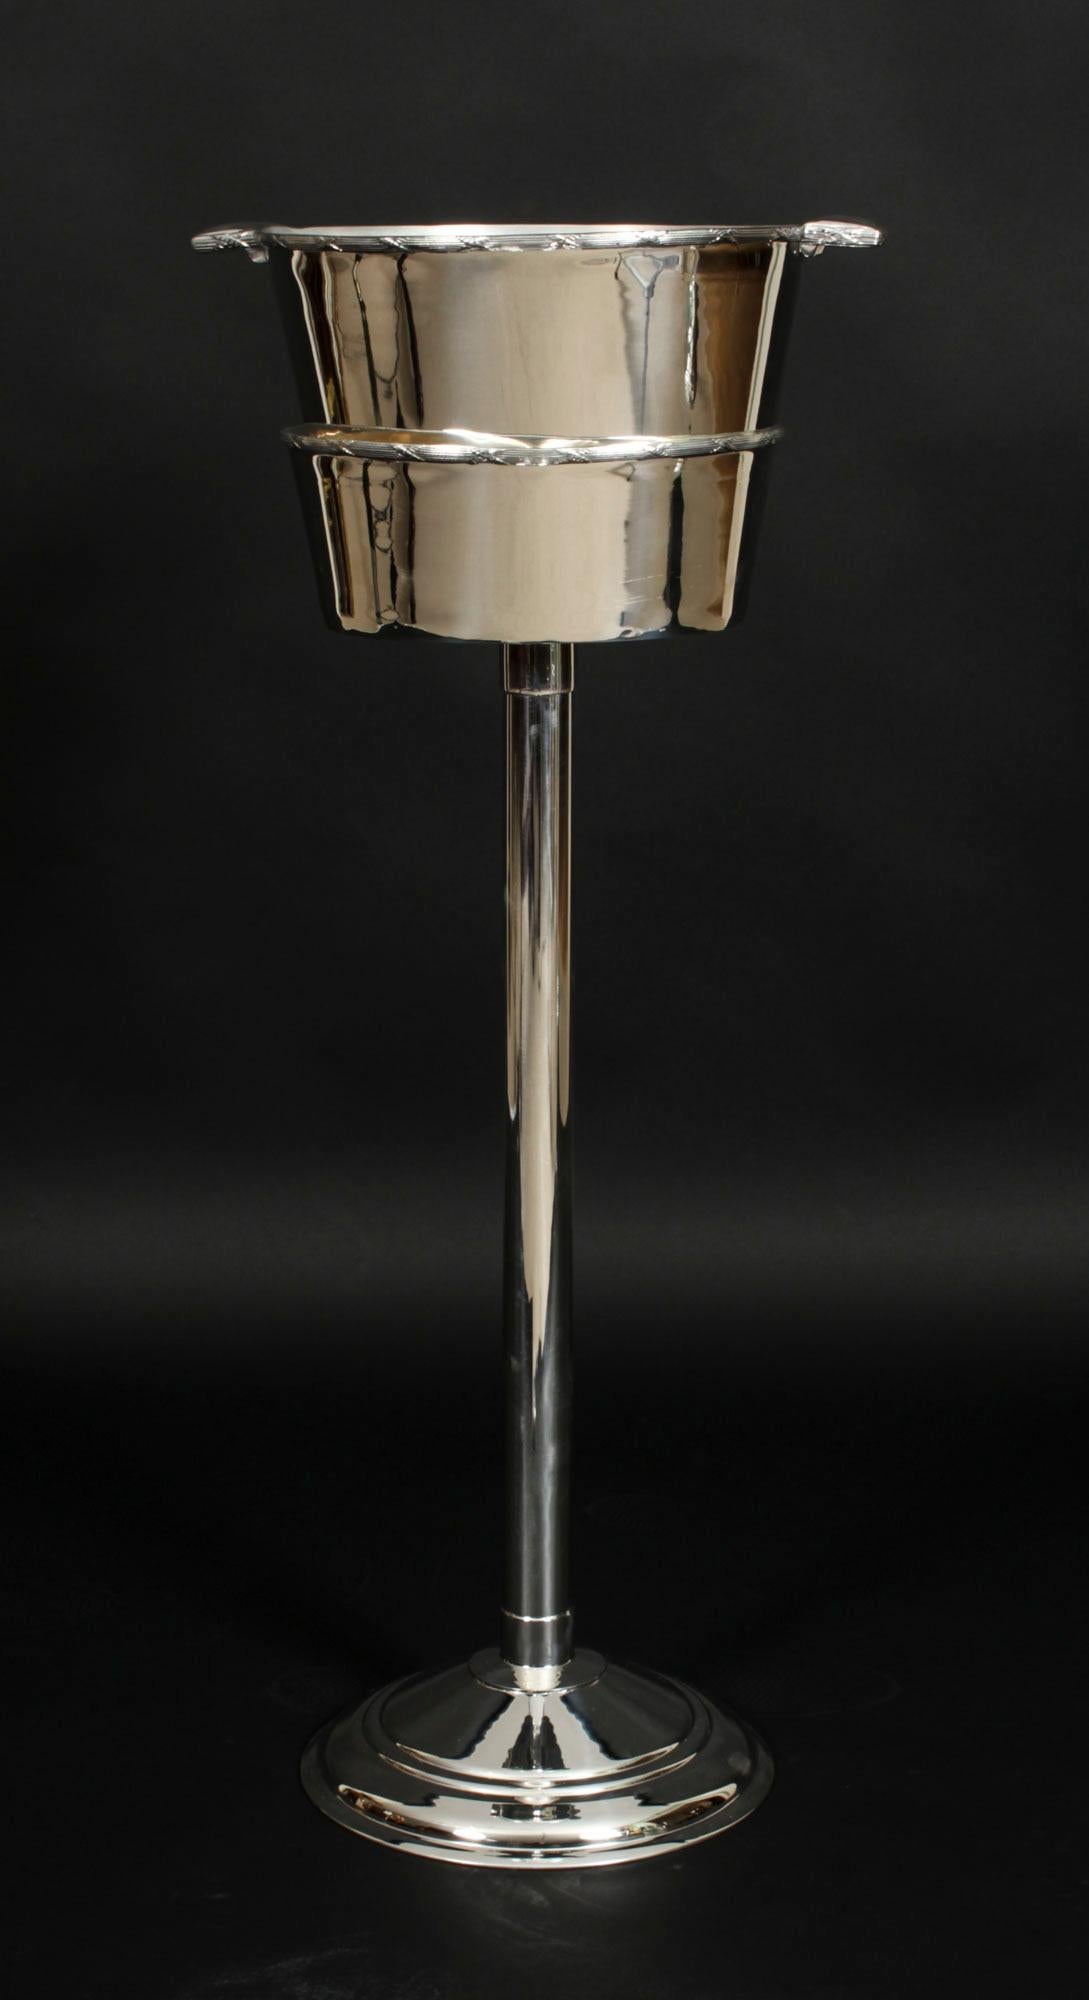 Dies ist ein fabelhafter versilberter Champagnerkühler auf einem Ständer mit der Herstellermarke des berühmten Silberschmieds,  Mappin & Webb, Datierung um 1900.

Er hat ein wunderschönes Design, das gleichzeitig elegant und modern ist.

Das